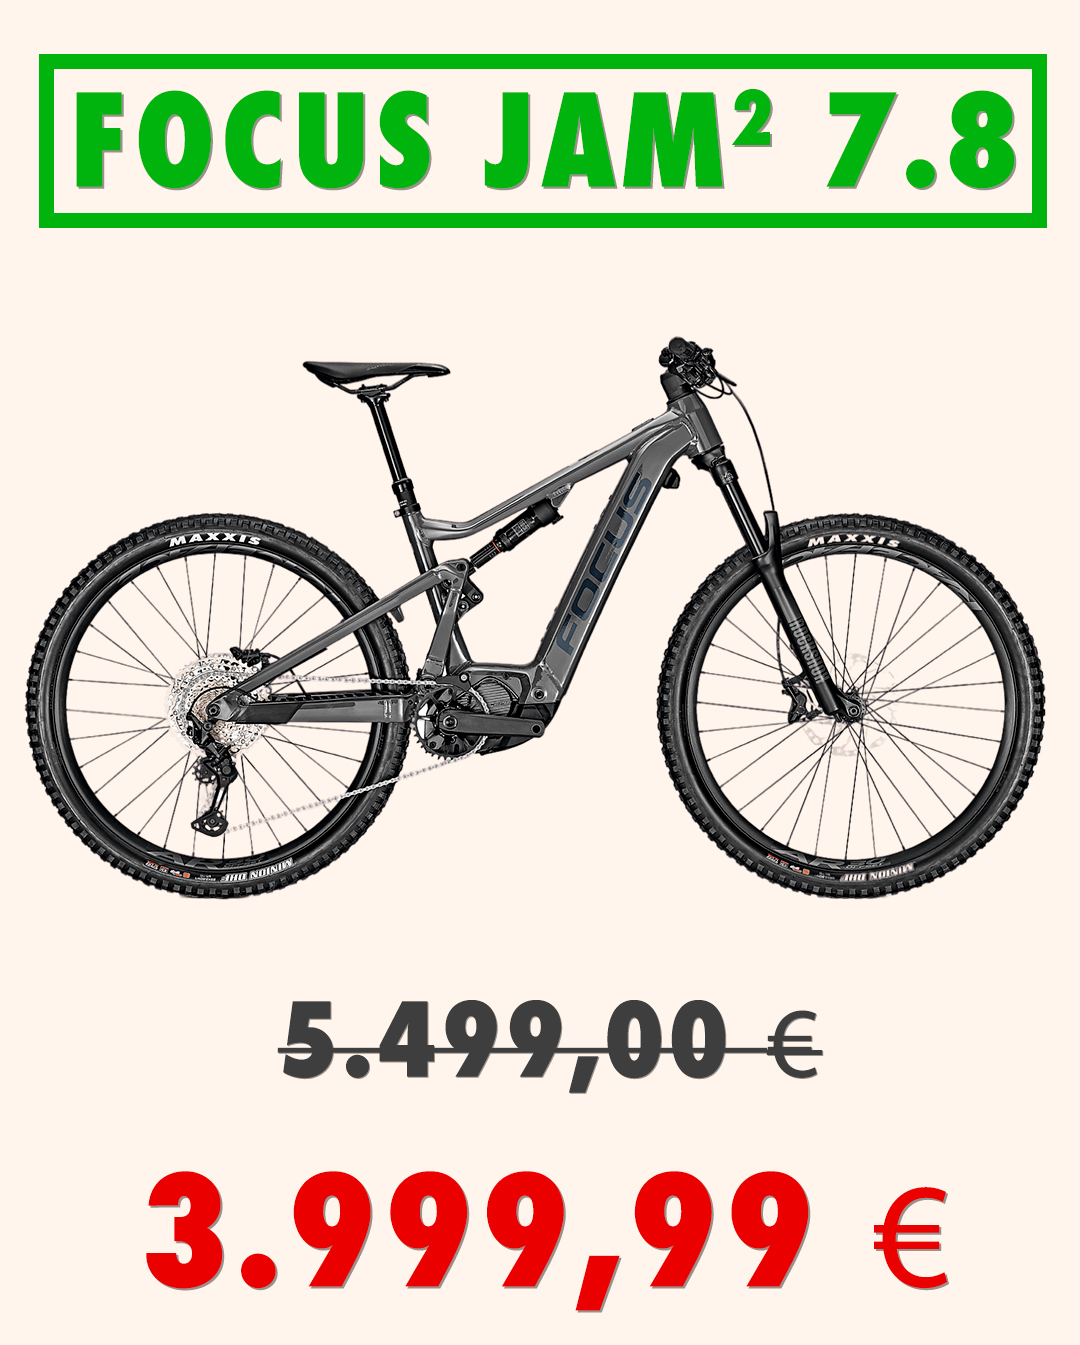 Oferta bicicleta Focus Jam